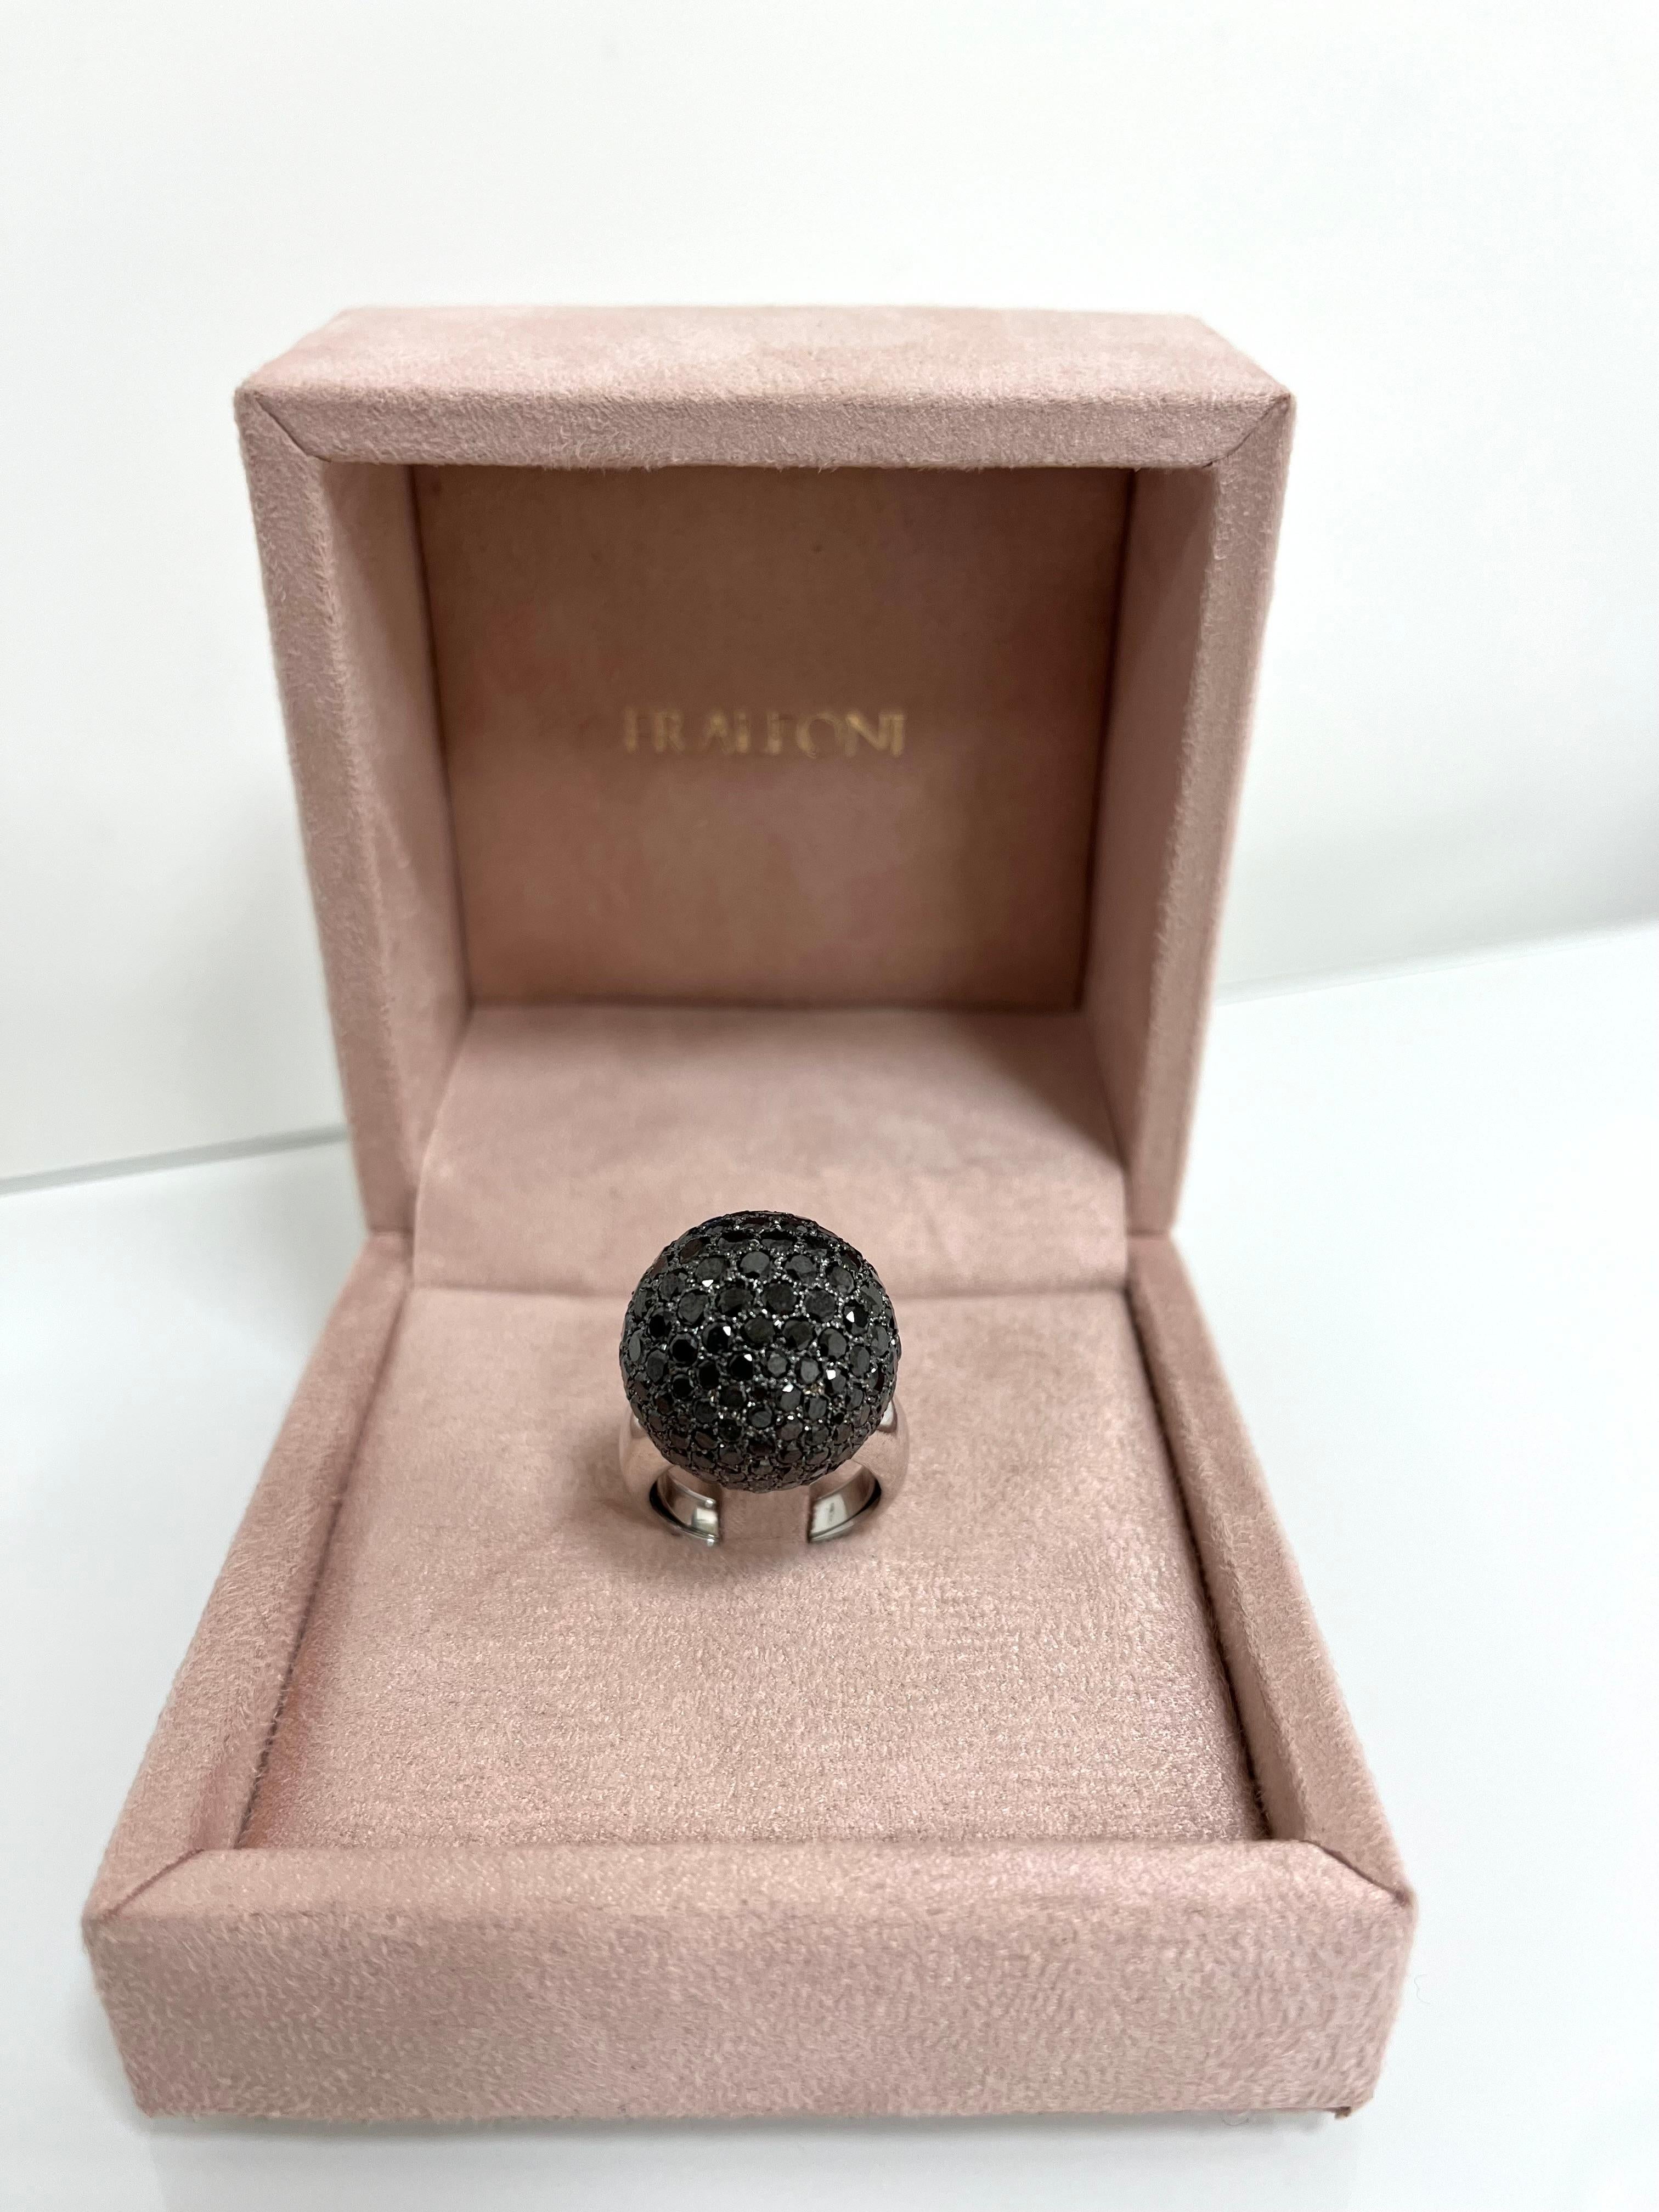 Women's or Men's Fraleoni 18 Kt. White Gold Black Diamond Cocktail Ring For Sale